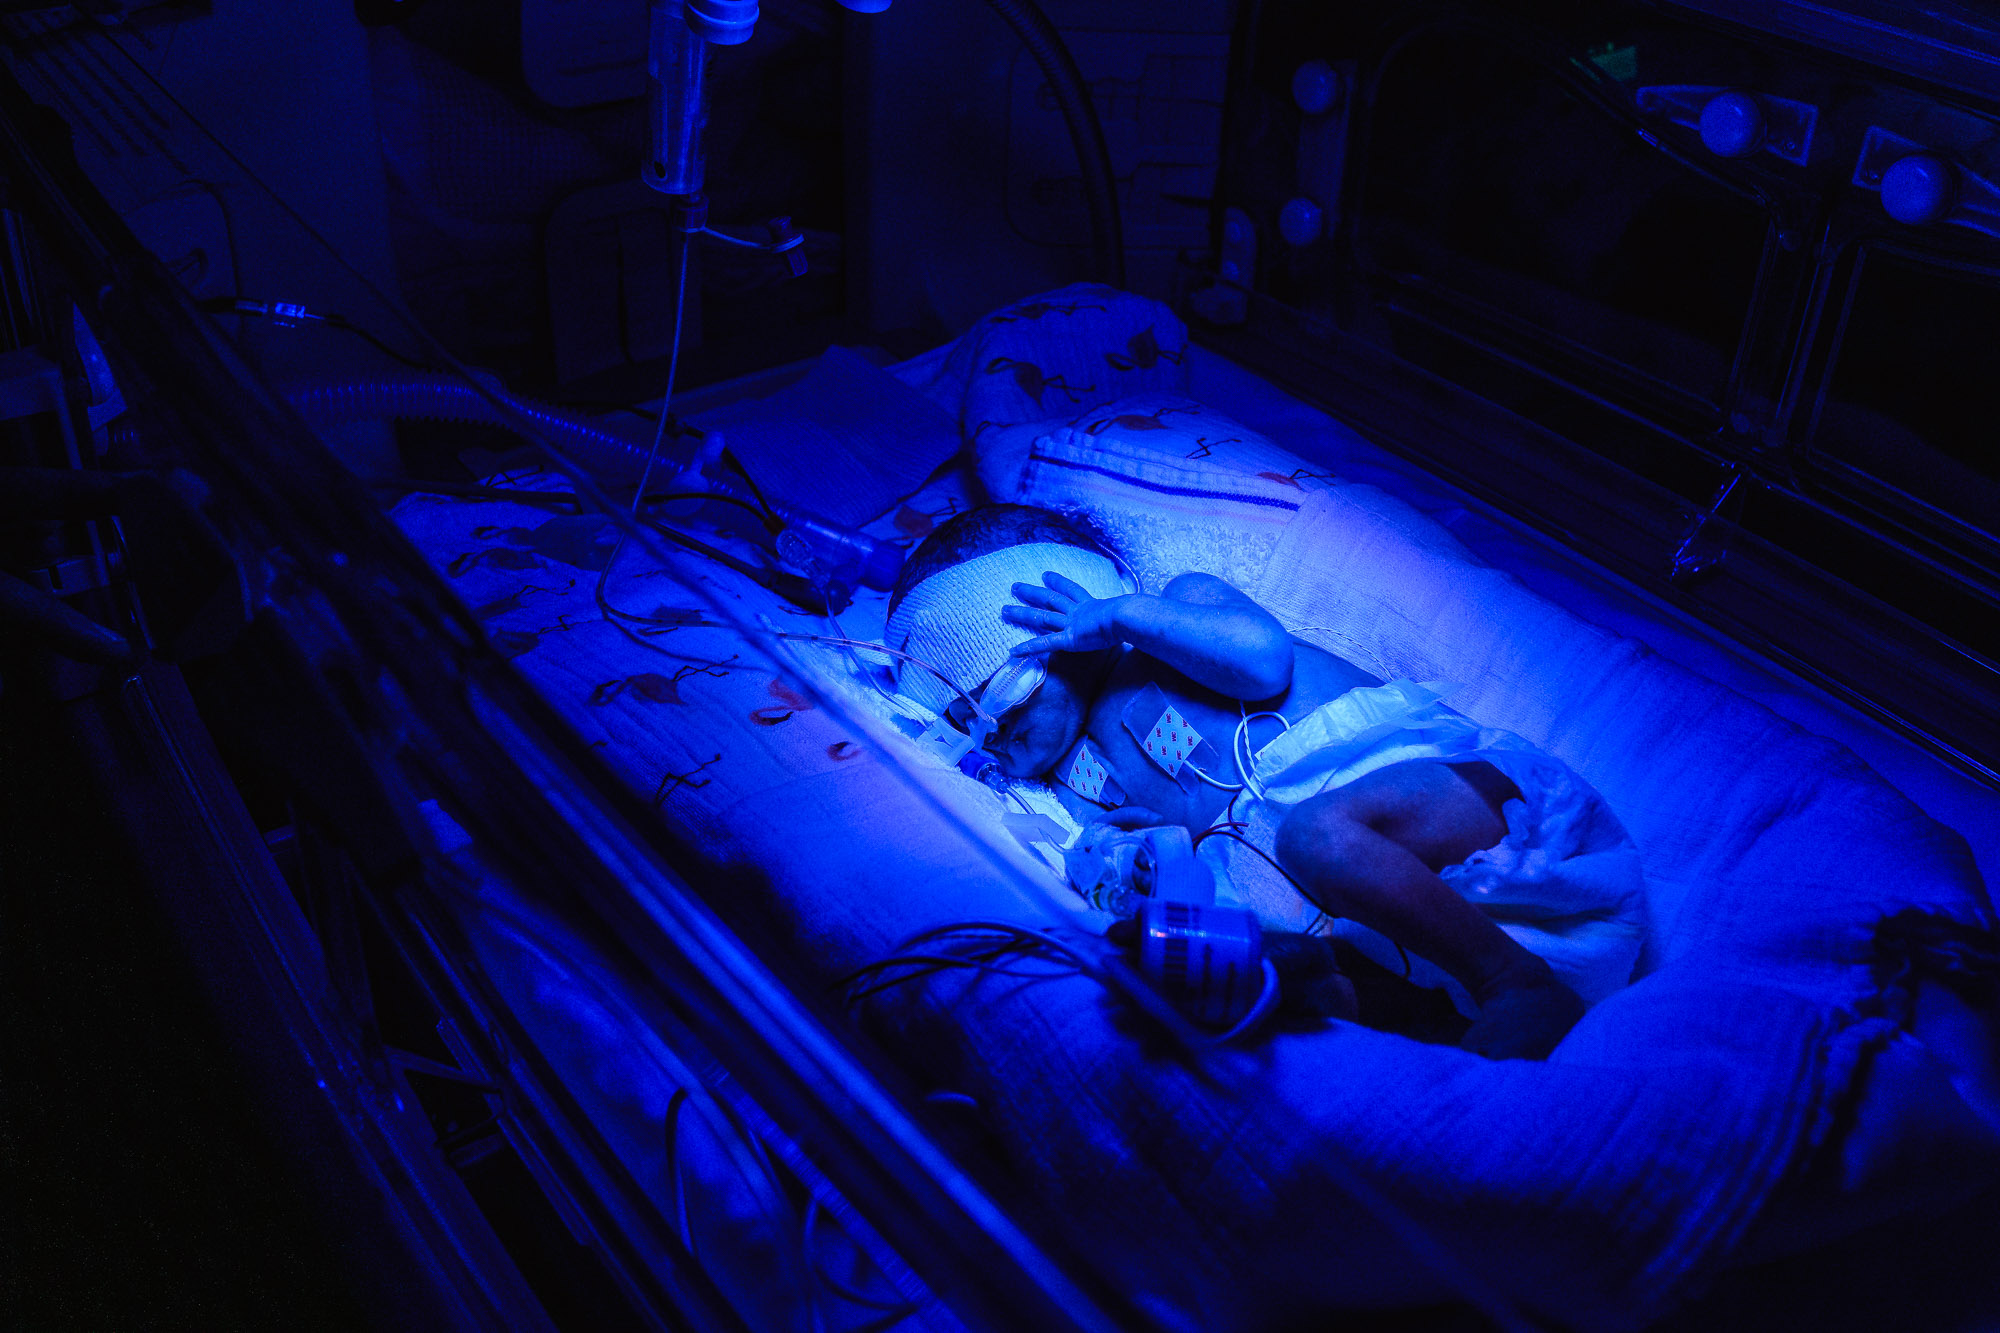 Tijdens de zorg reportage in de NICU, voor de beeldbank van het WKZ, zag ik een premature baby lichttherapie ondergaan. 